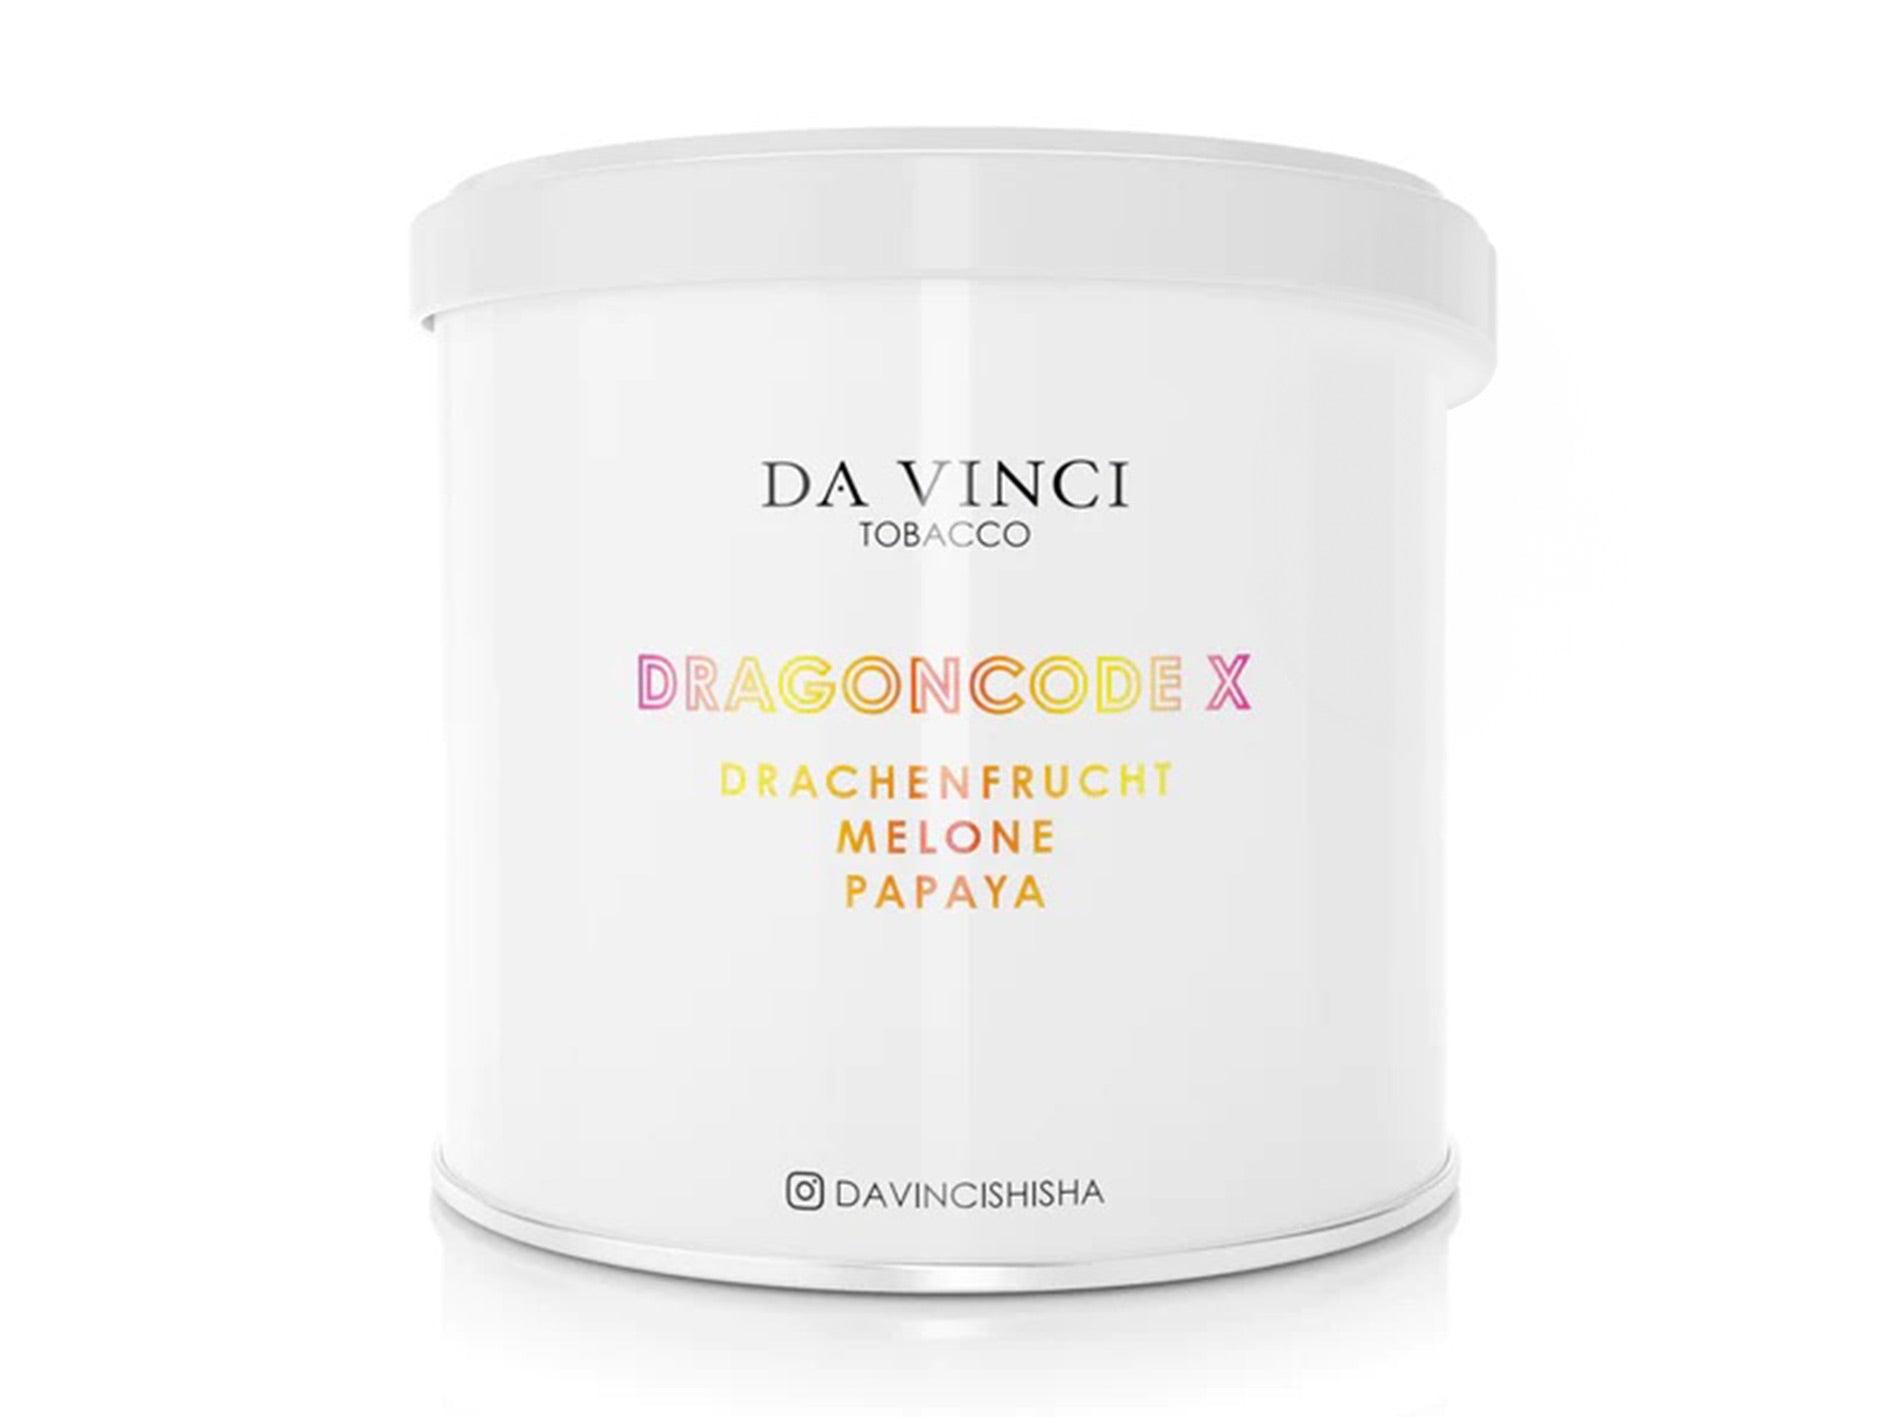 Da Vinci Pfeifentabak 70g Drachenfrucht DragoncodeX Melone Papaya Shischa